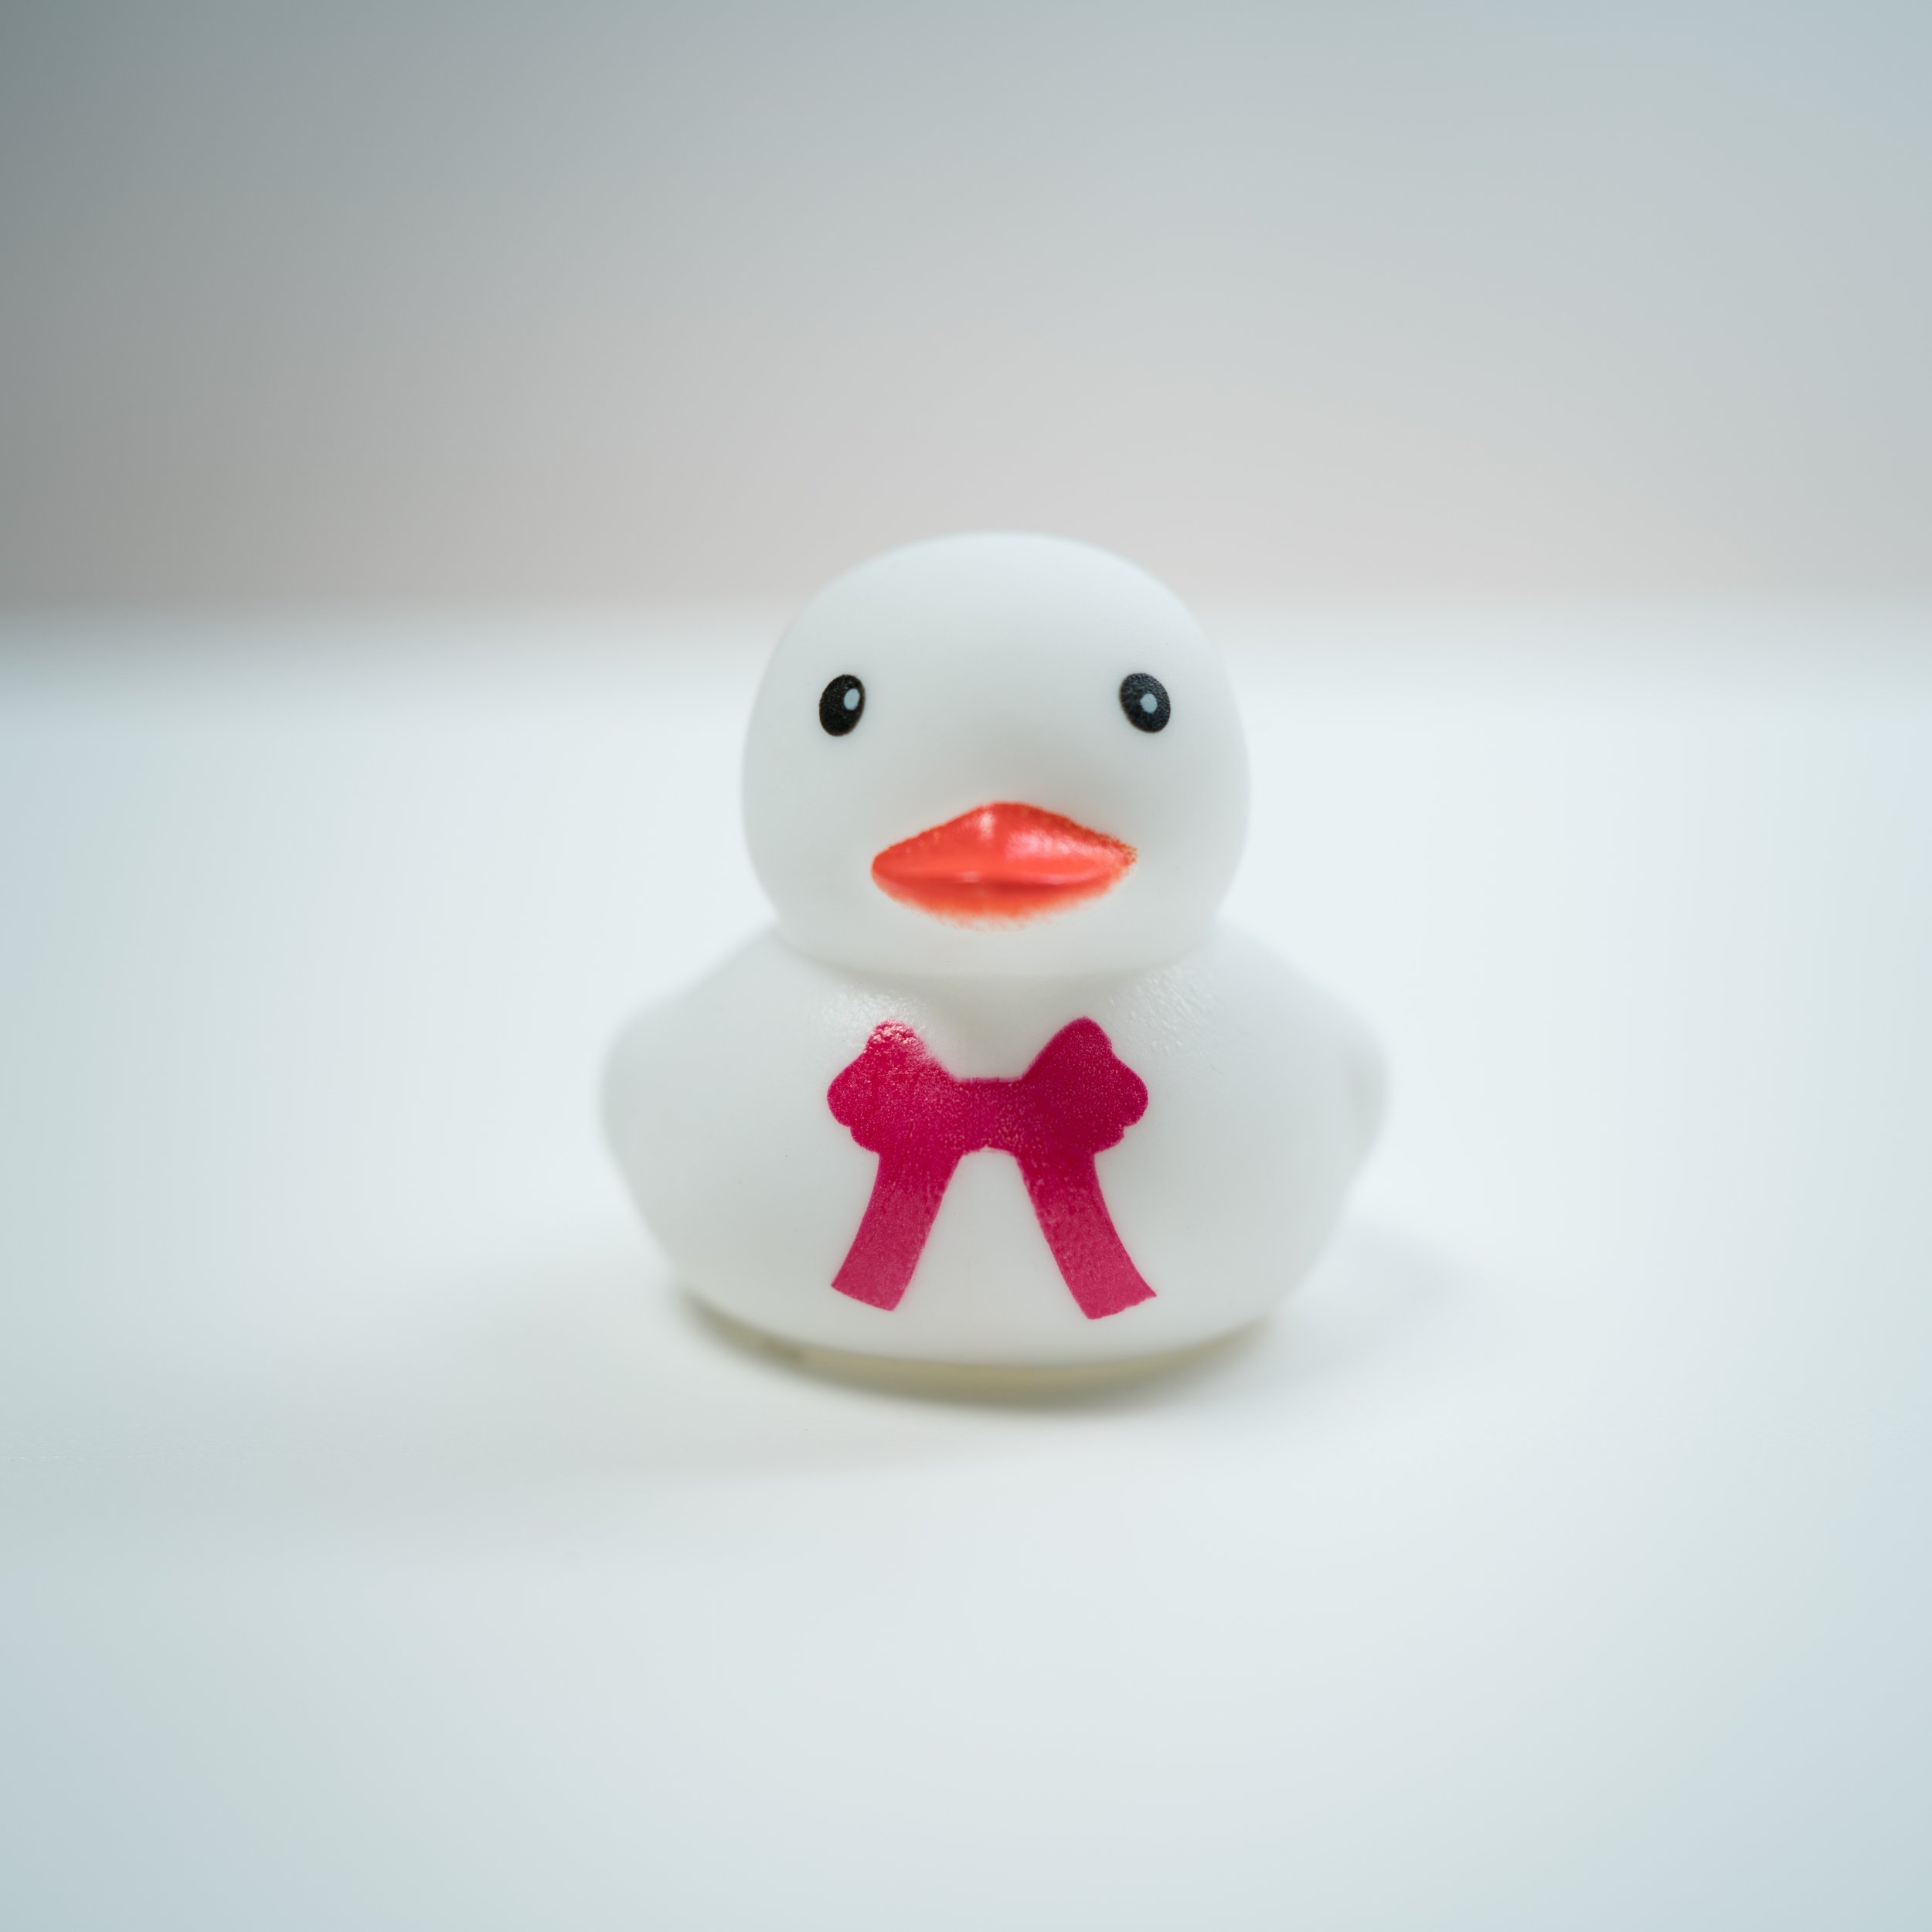 Rubber Ducks-2.jpg